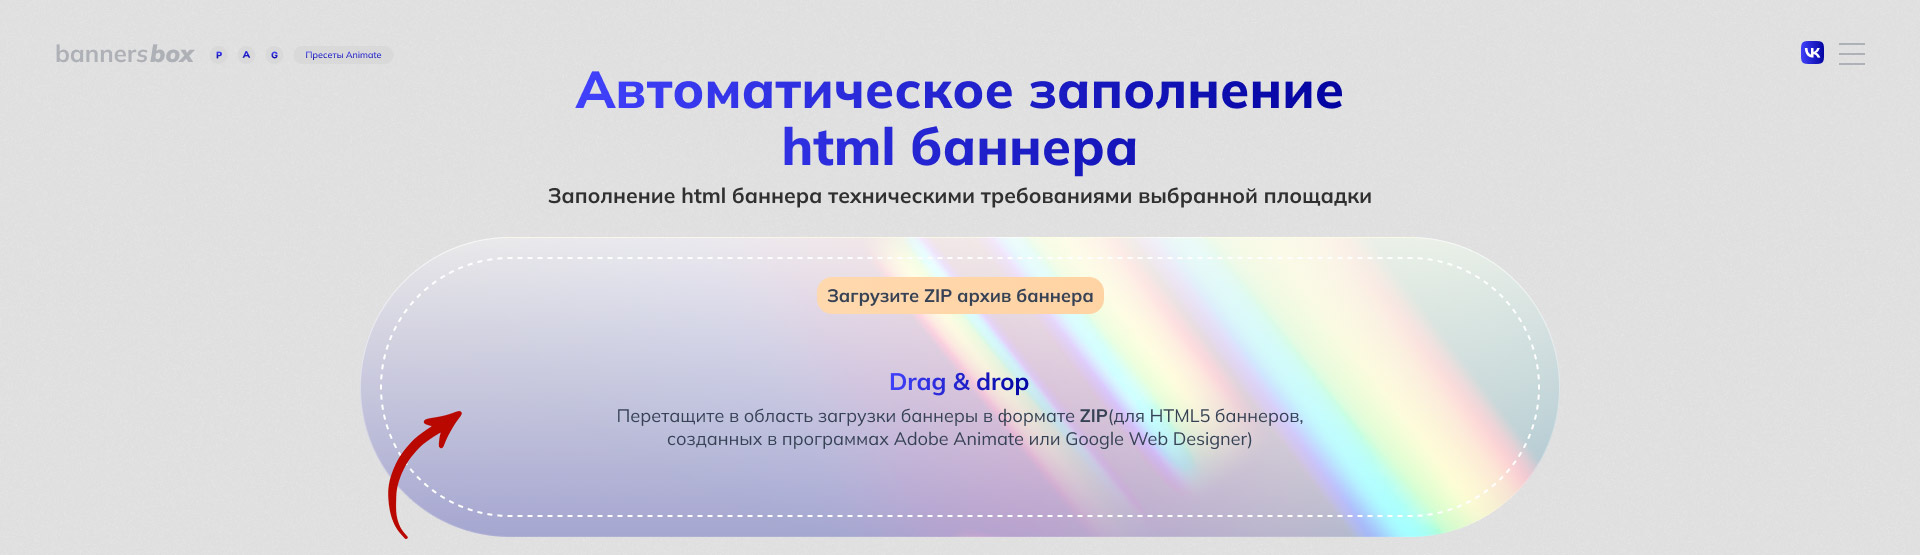 Скриншот поля Drag&Drop загрузки html баннеров для автоматического заполнения технических требований